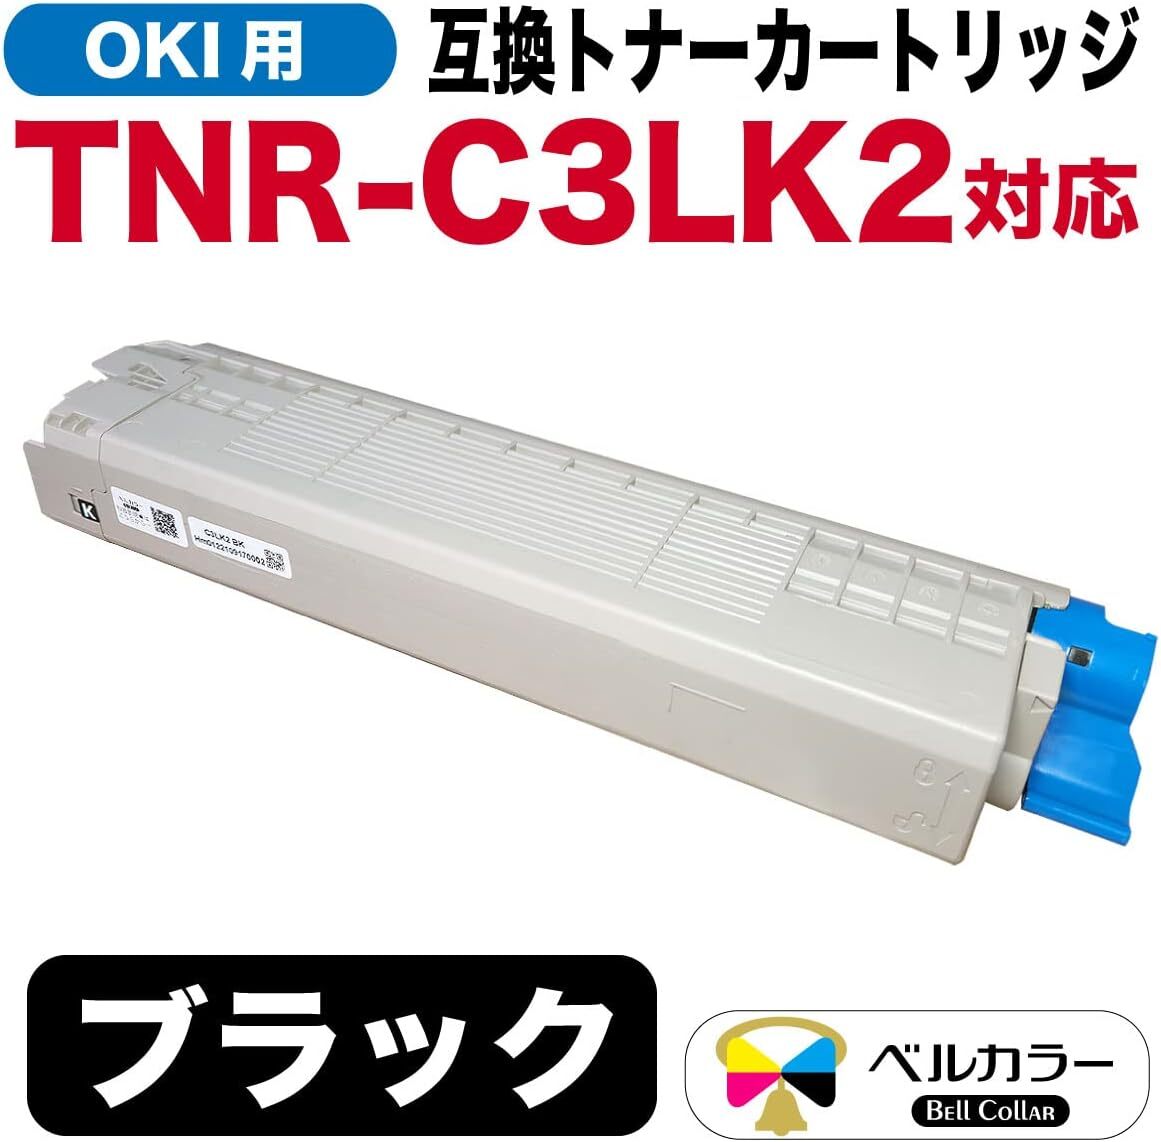 ベルカラー OKI 互換トナーカートリッジ TNR-C3LK2 C811dn MC843dnwv MC843dnw ブラック 大容量_画像2